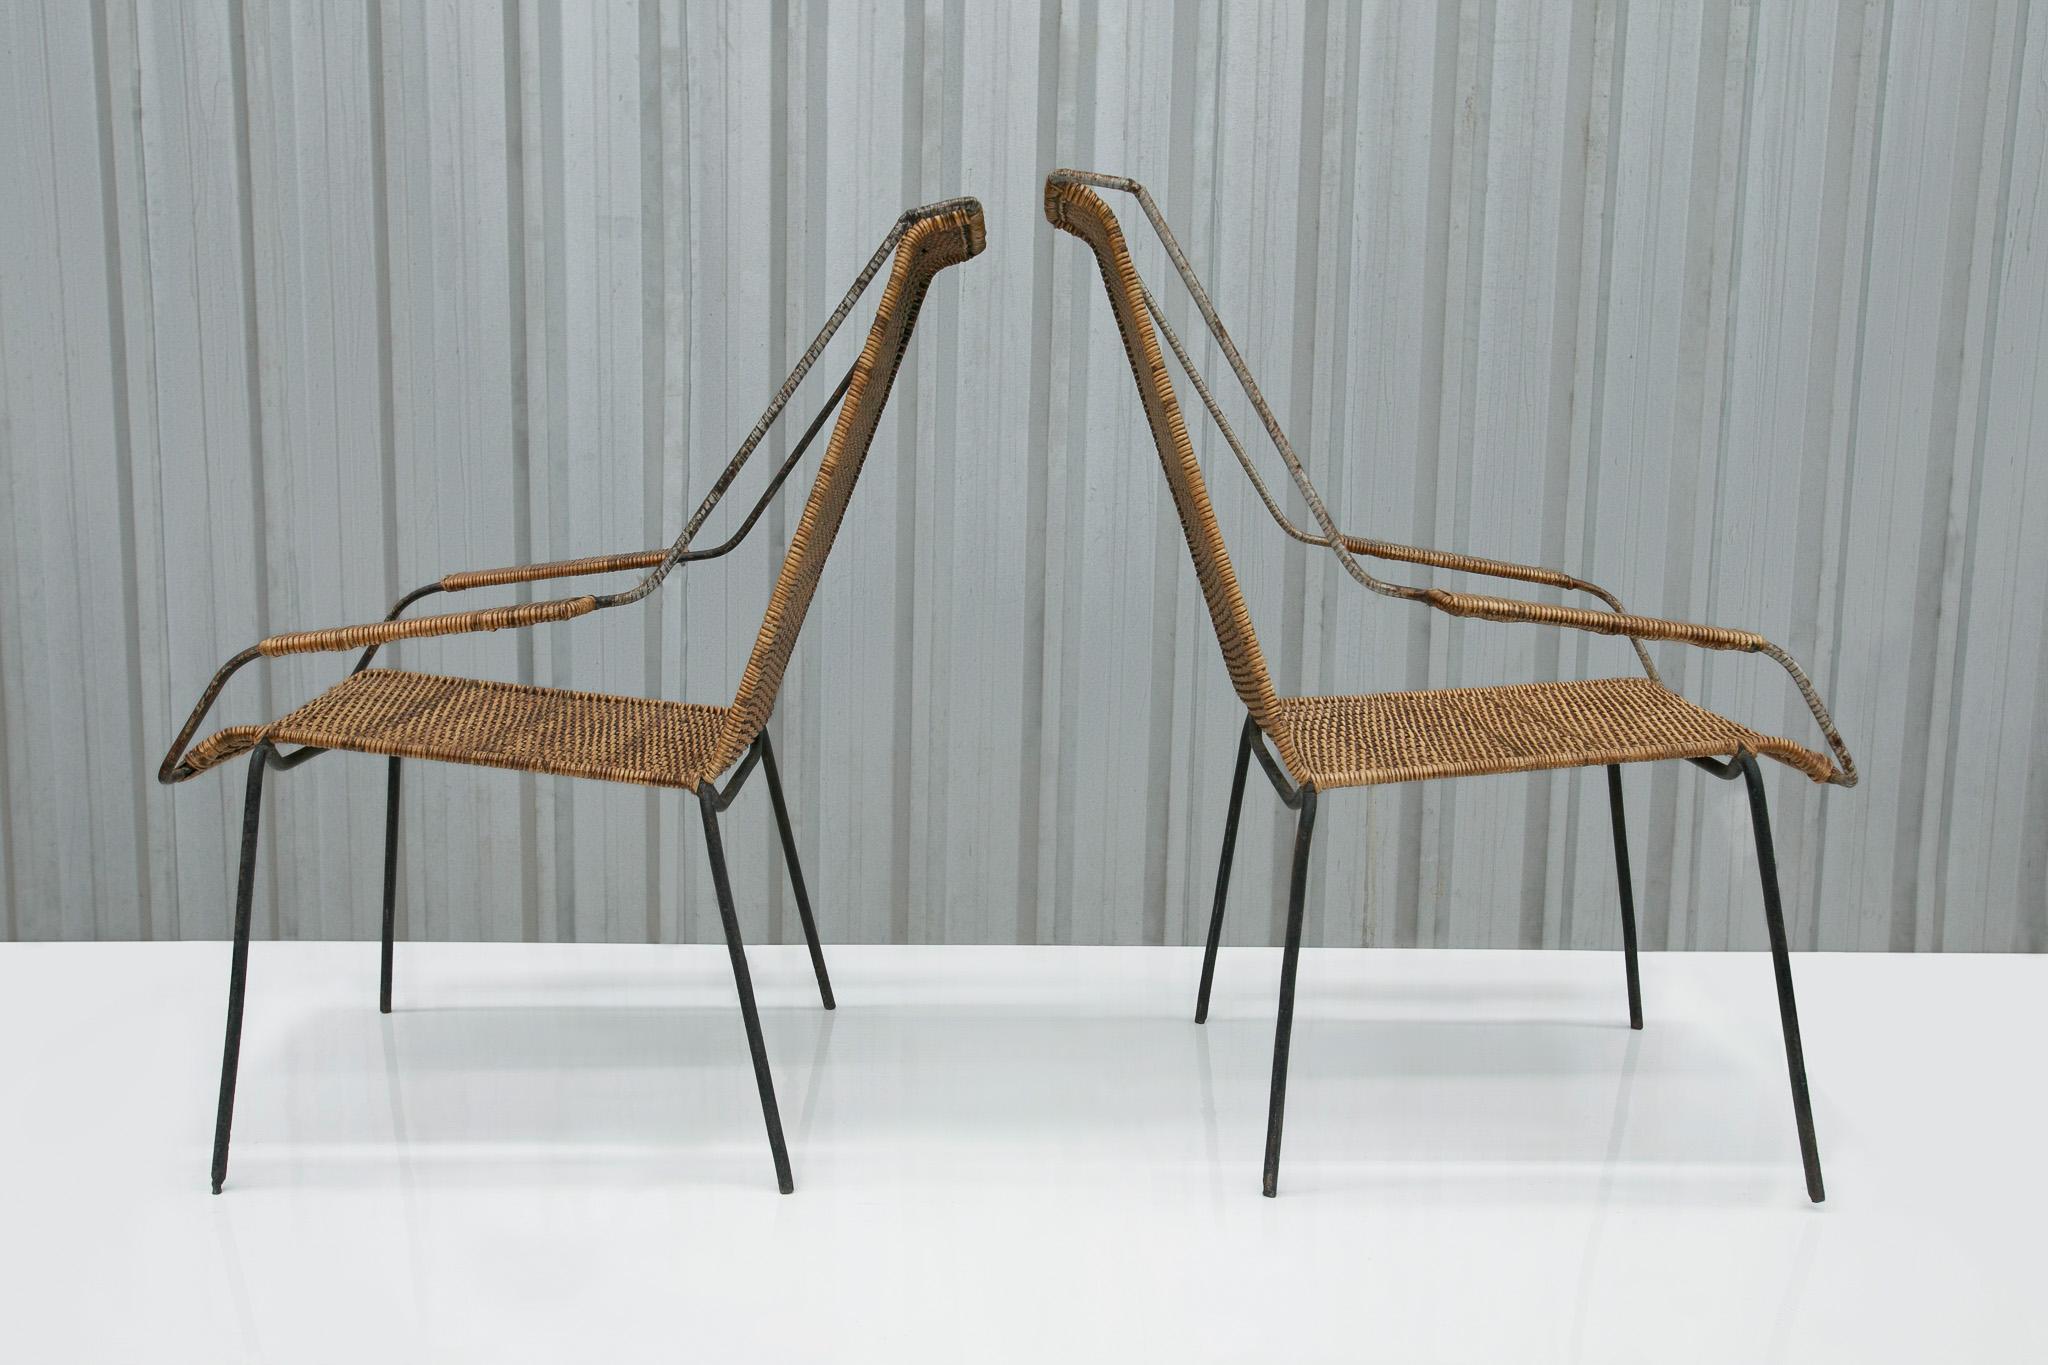 Dieses spektakuläre Set aus zwei Mid Century Modern Sesseln mit Hockern aus Rohr und Eisen, das Carlo Hauner zugeschrieben wird, ist nichts weniger als wunderschön.

Die Sessel haben ein Stahlgestell mit vier Beinen, eine hohe Rückenlehne, eine